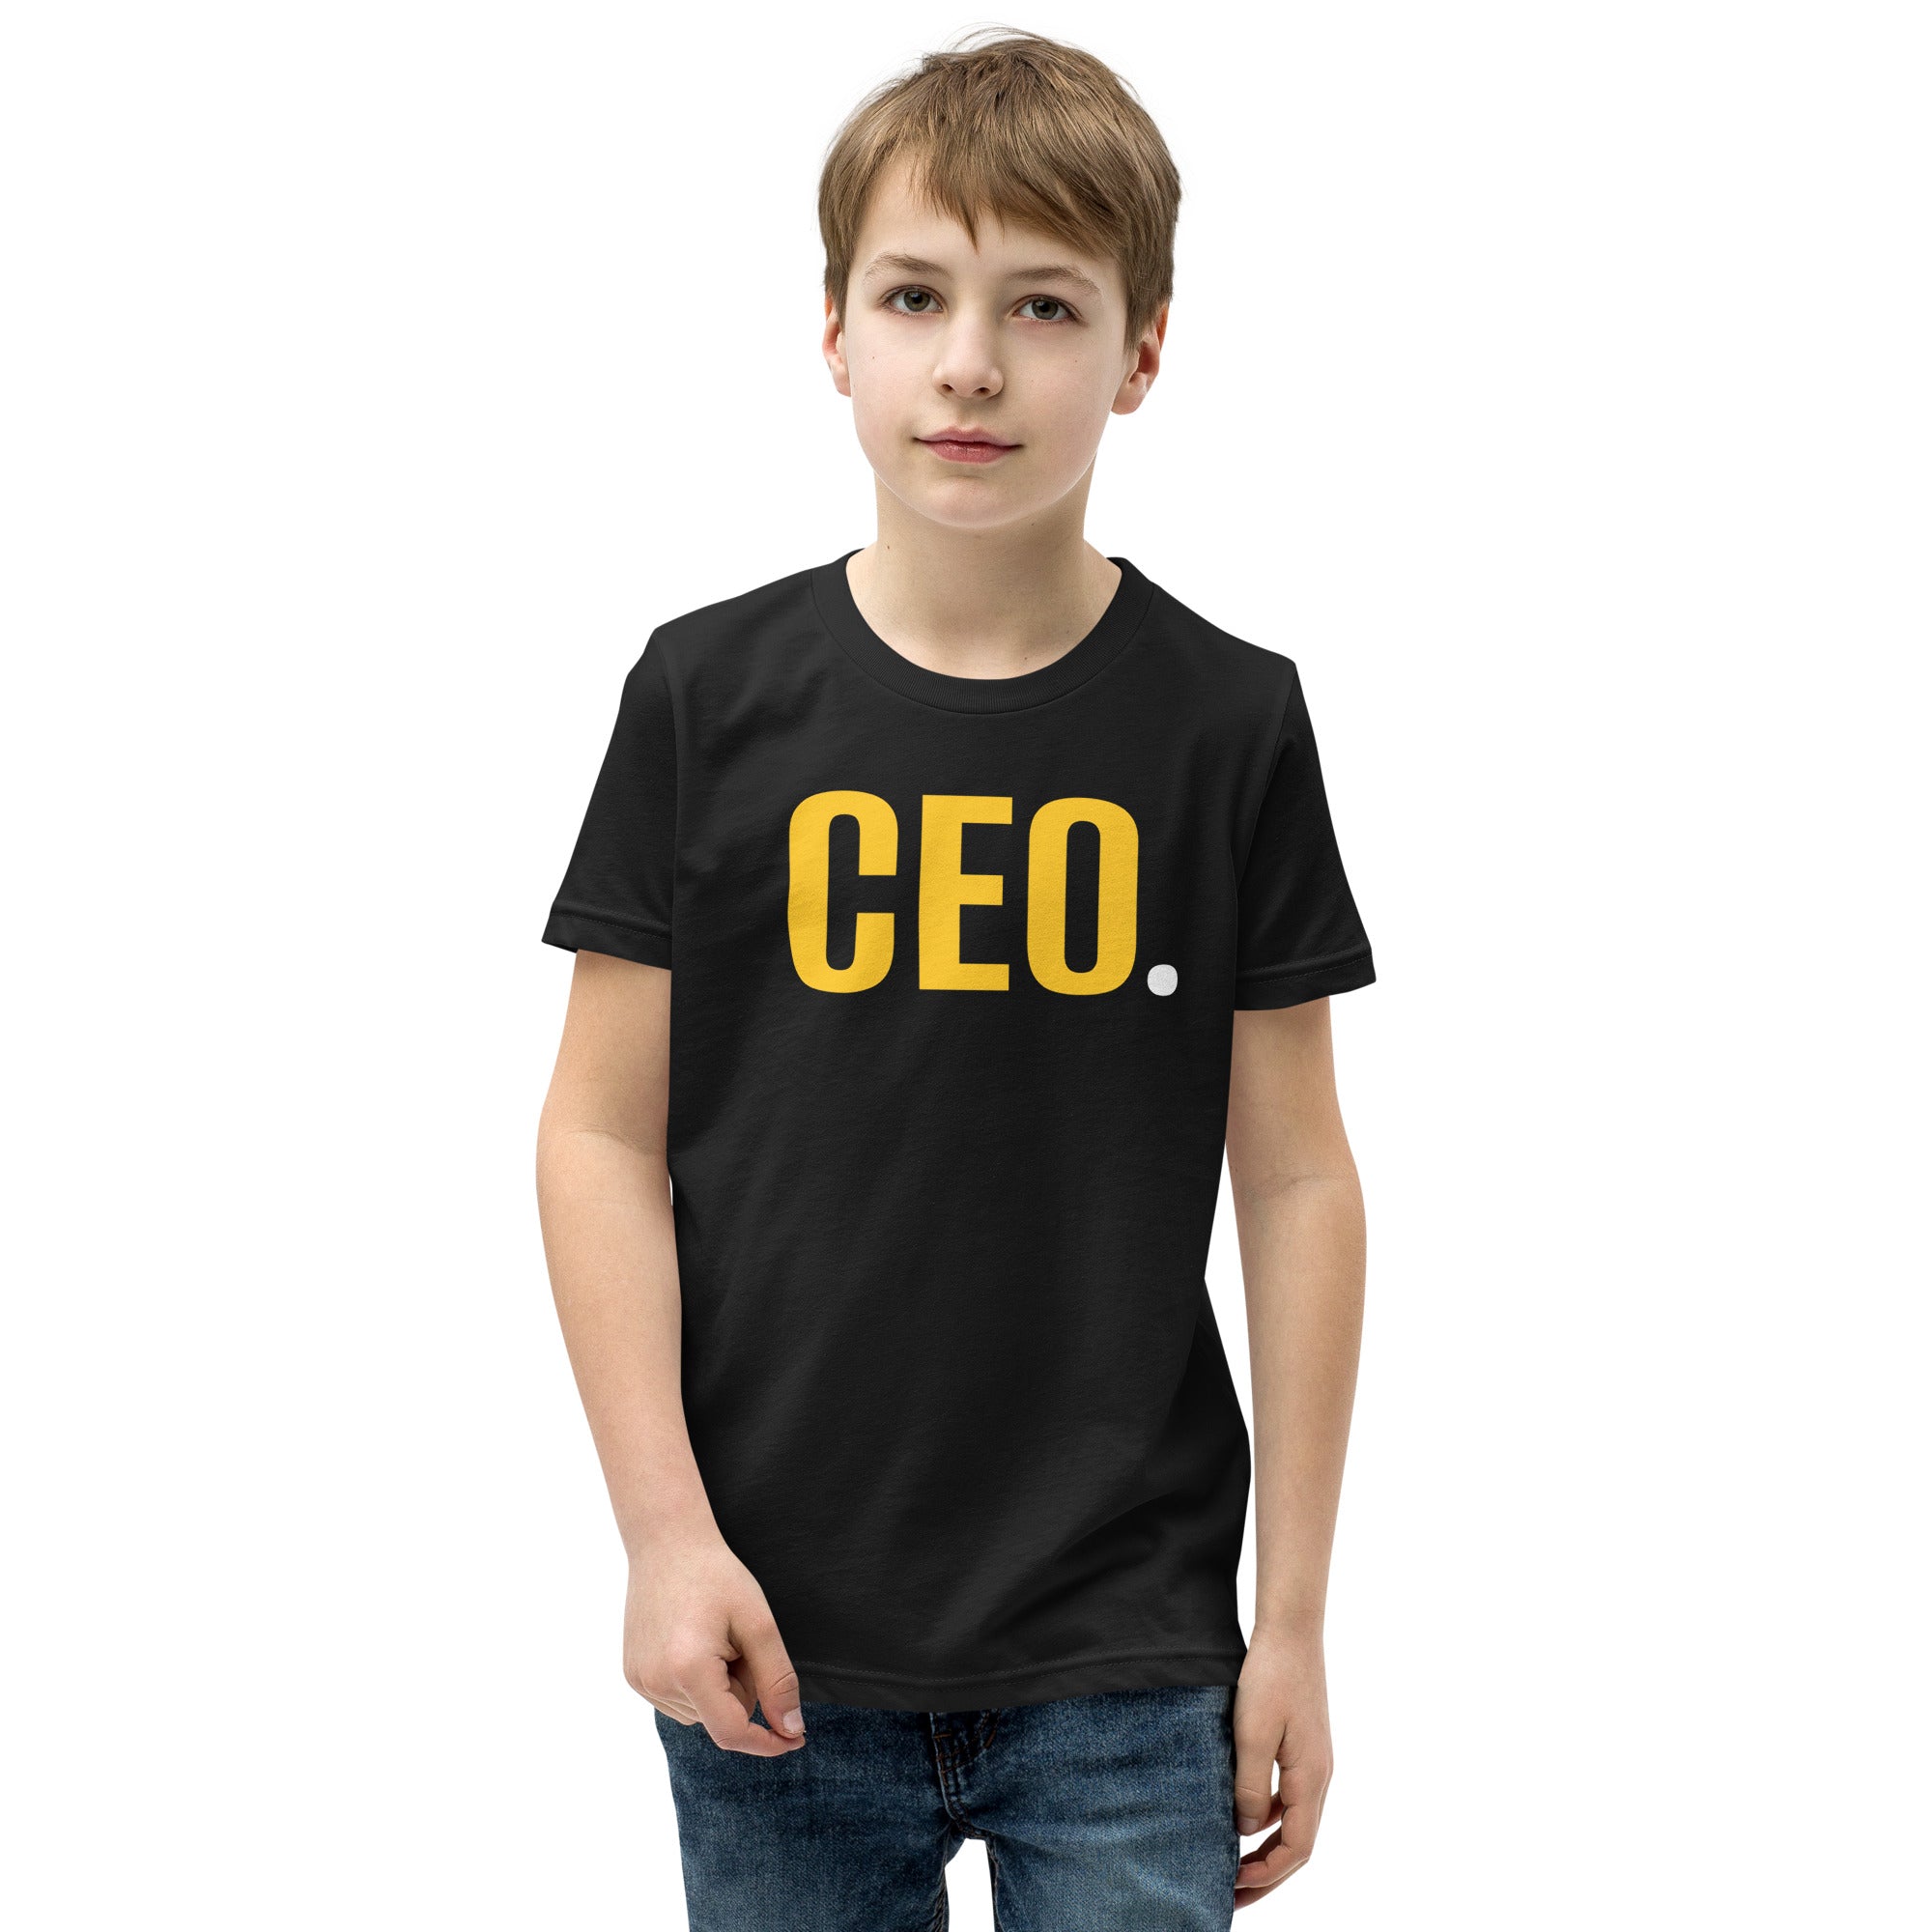 CEO.